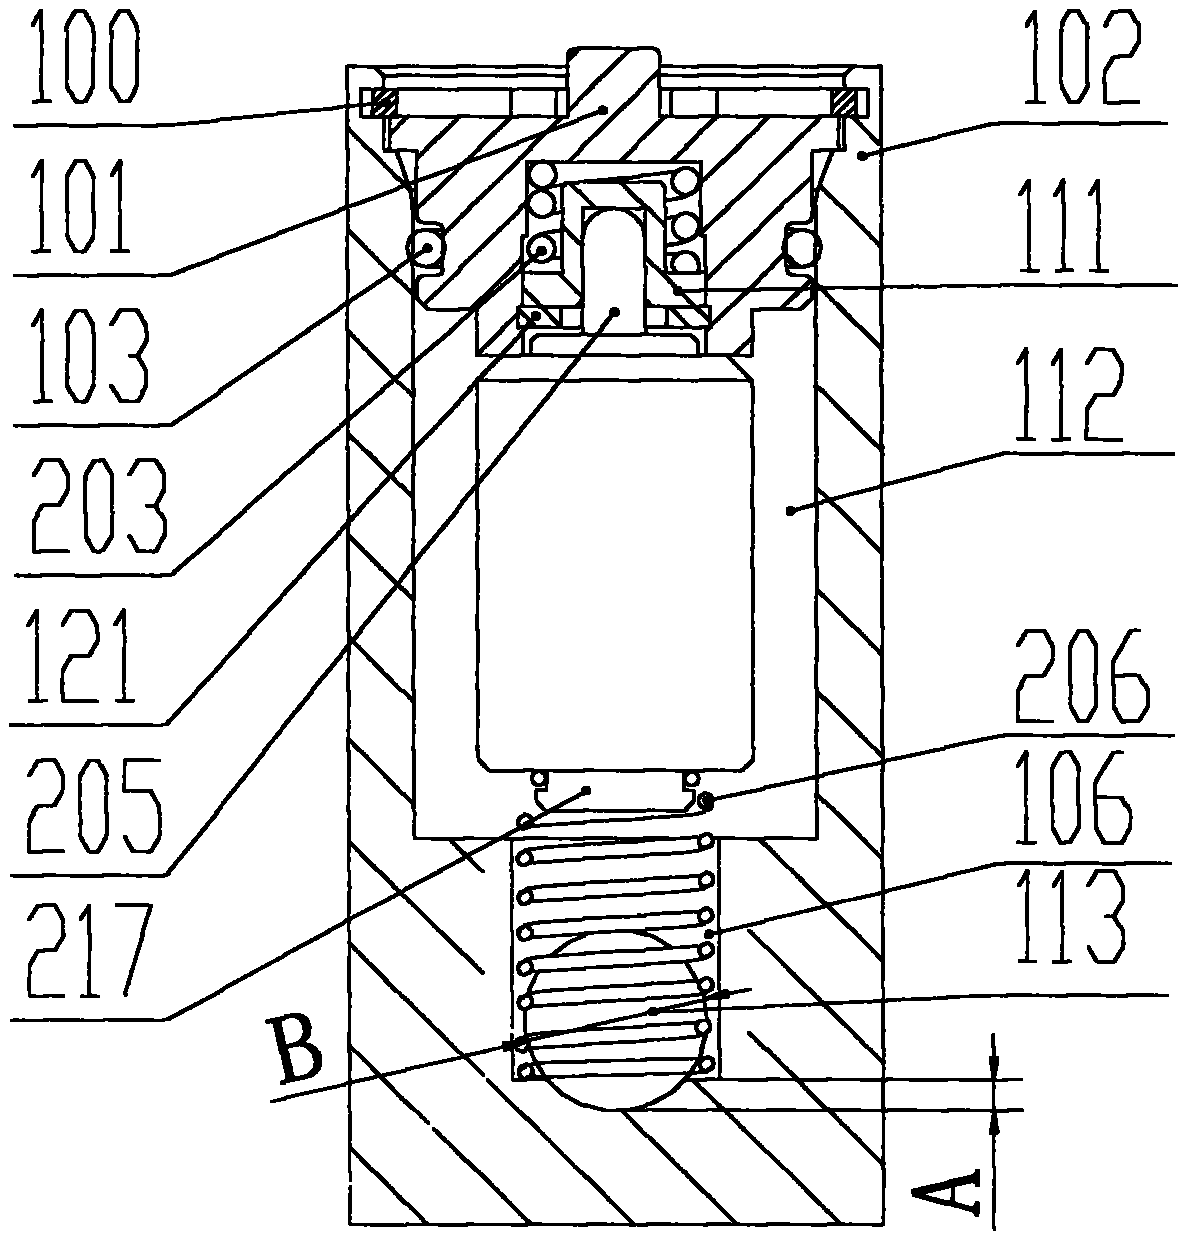 Temperature regulator for heat exchange loop